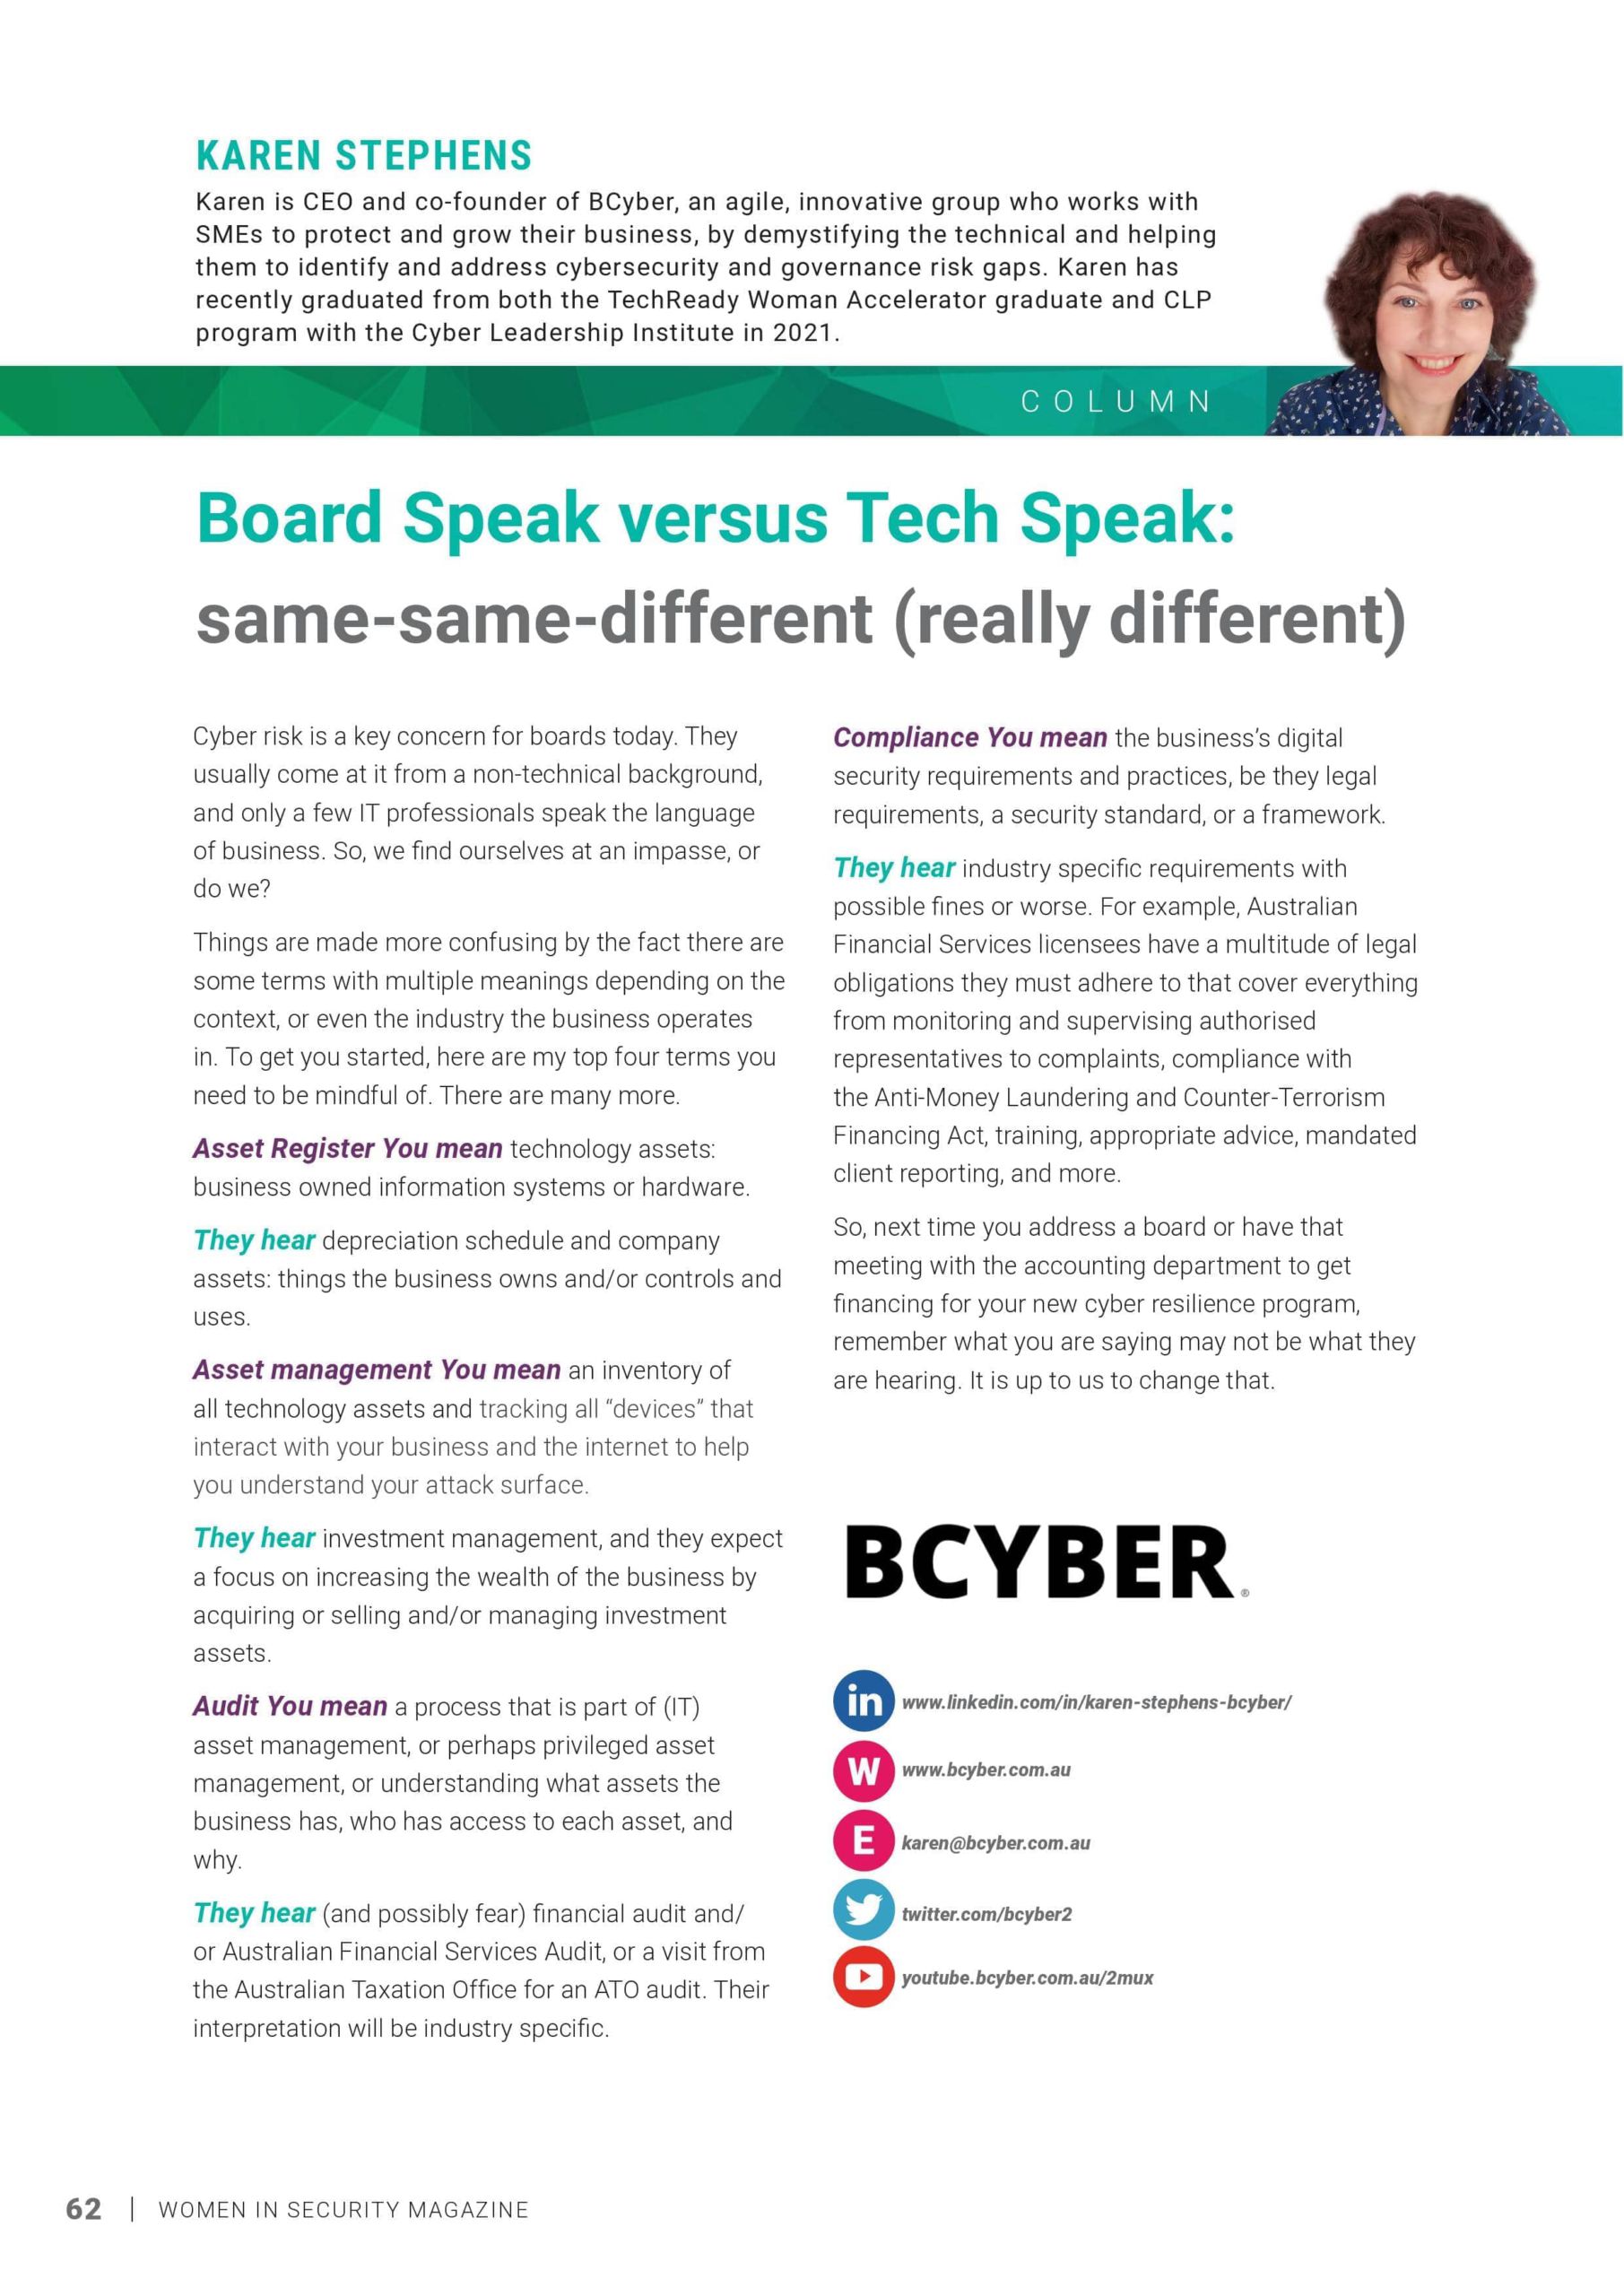 Board Speak versus Tech Speak same-same-different (really different)